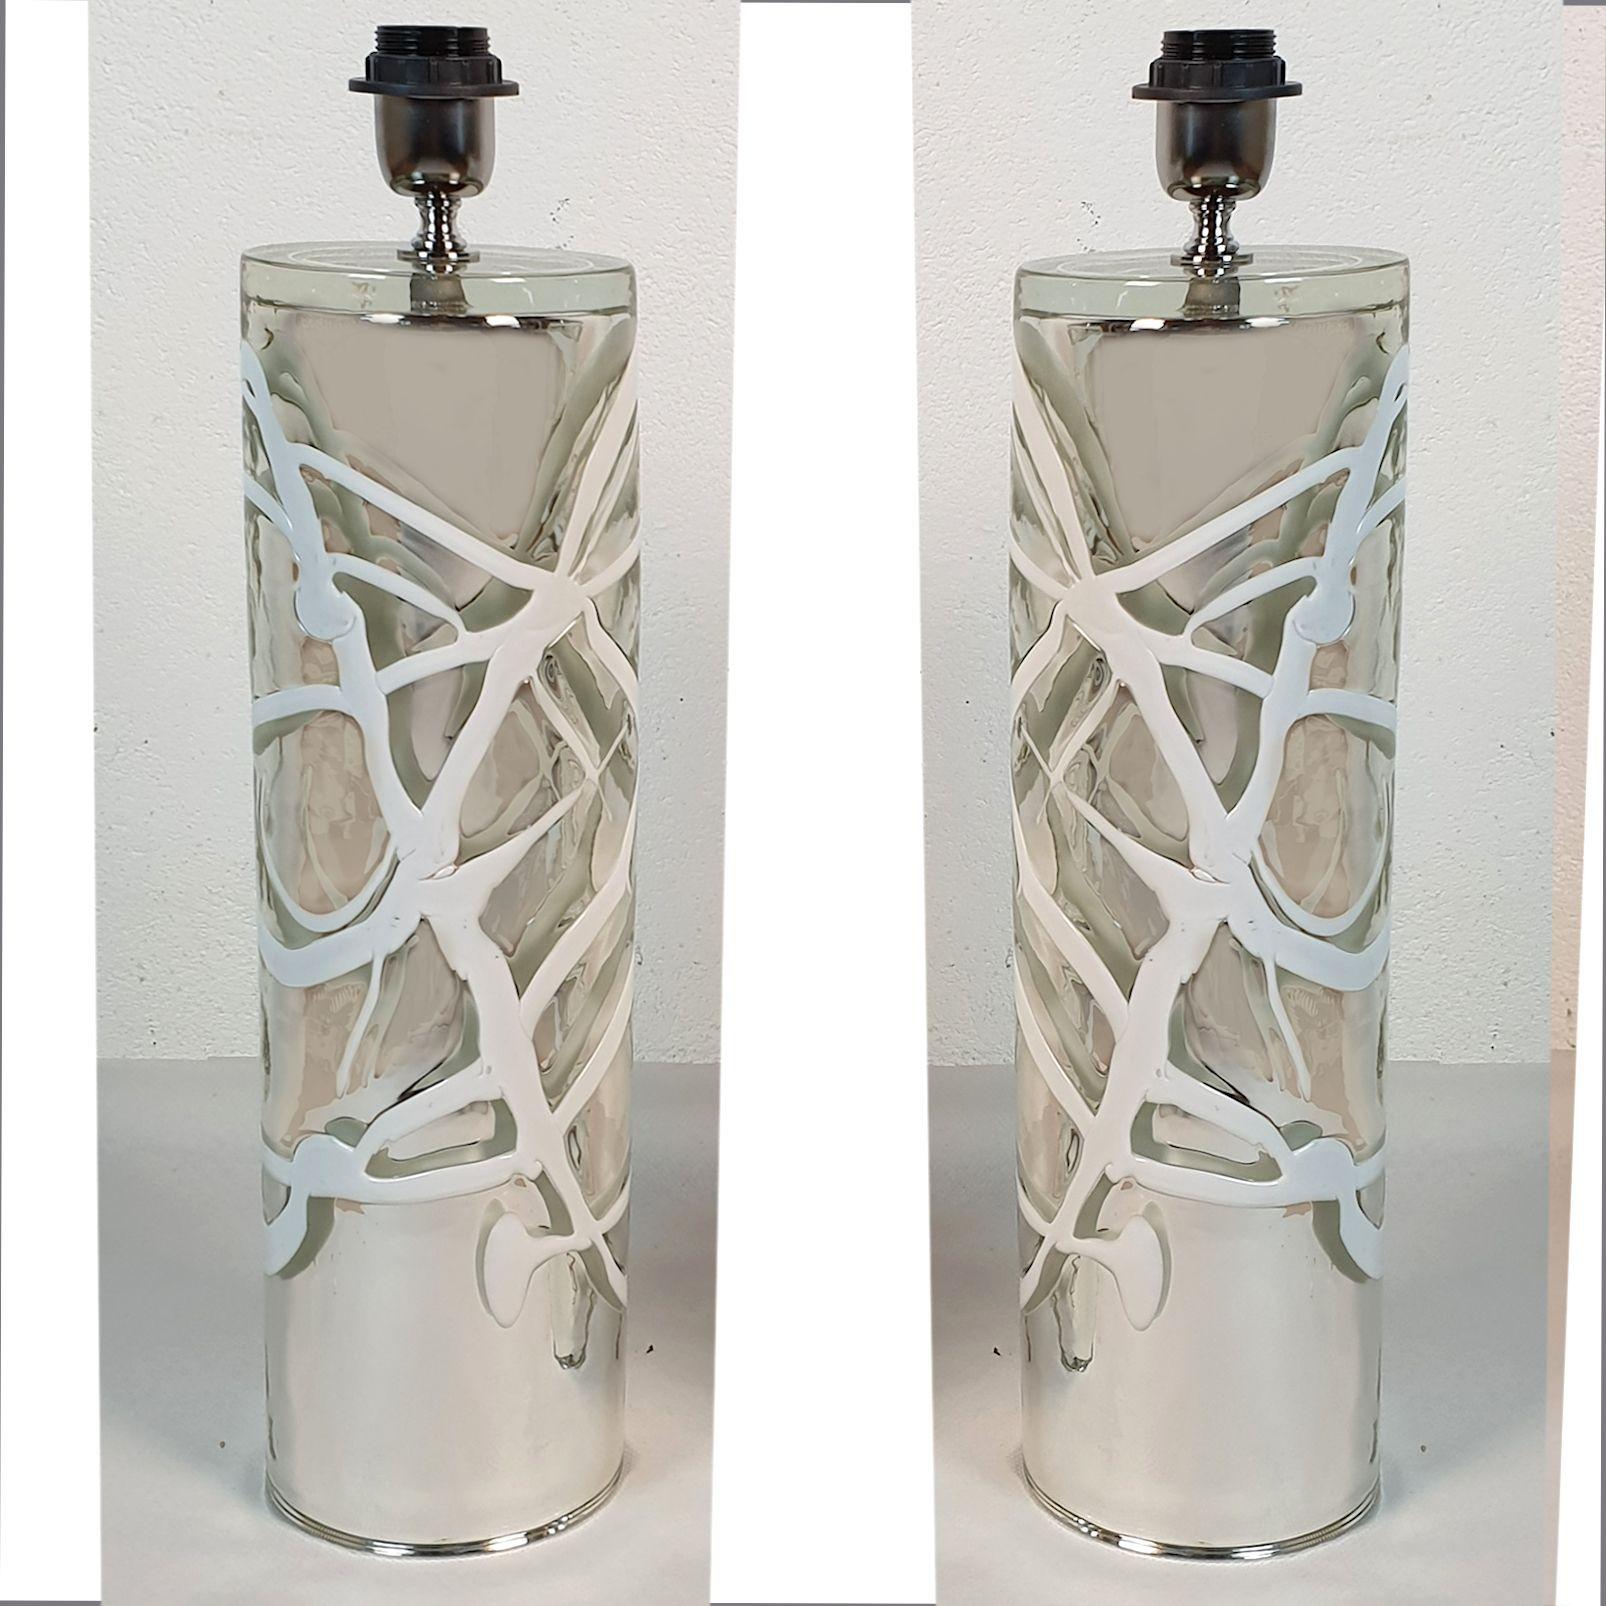 Großes Paar Murano-Glas-Tischlampen aus der Mitte des Jahrhunderts, nach Venini, Italien 1970er Jahre.
Die beiden Tischlampen haben eine zylindrische Form und sind aus schwerem, glattem Murano-Glas gefertigt.
Das Glas ist silbern und verspiegelt,